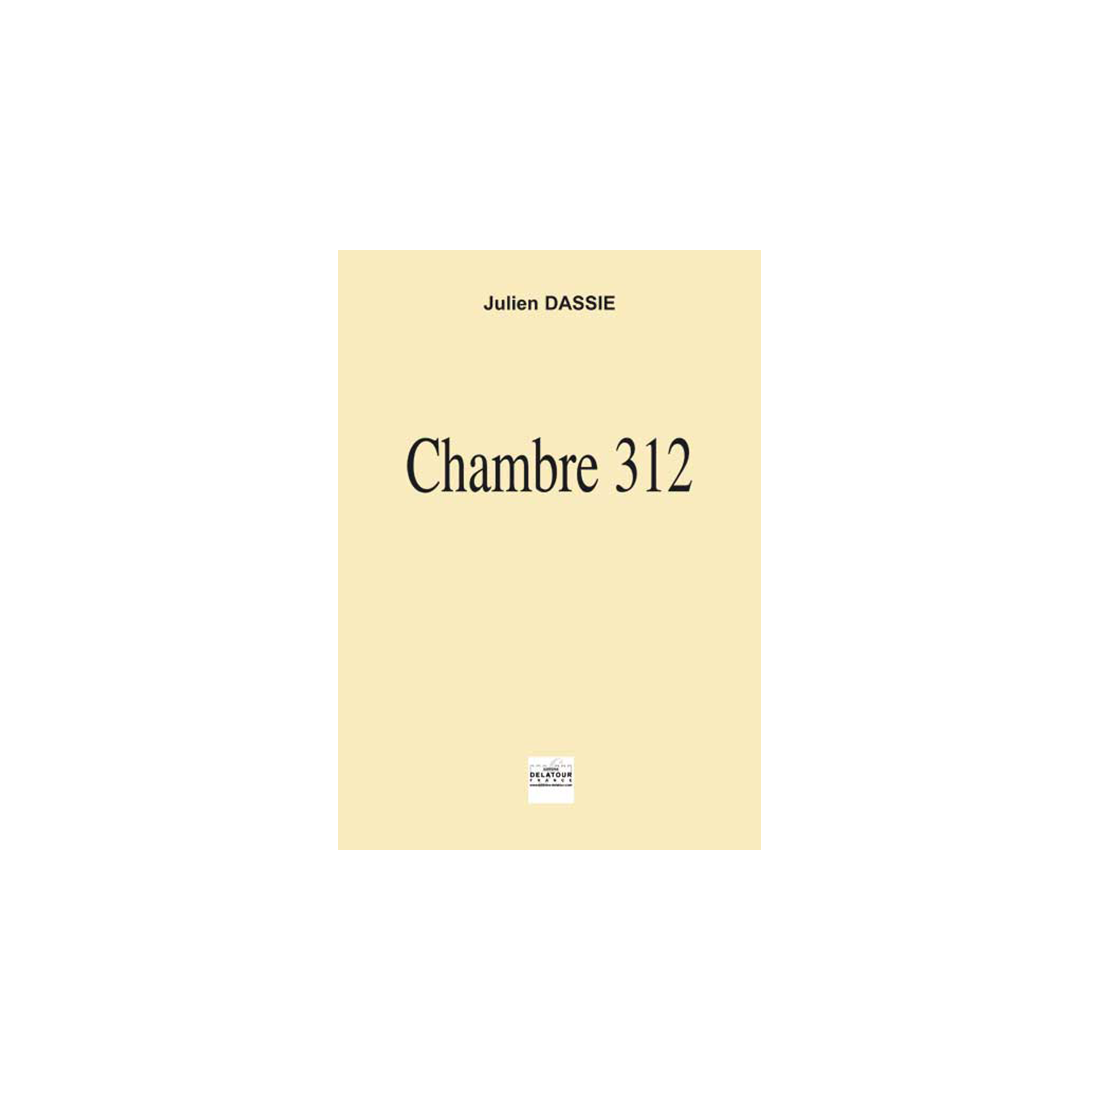 Chambre 312 for accordion solo, countertenor and 13 musicians - FULL SCORE